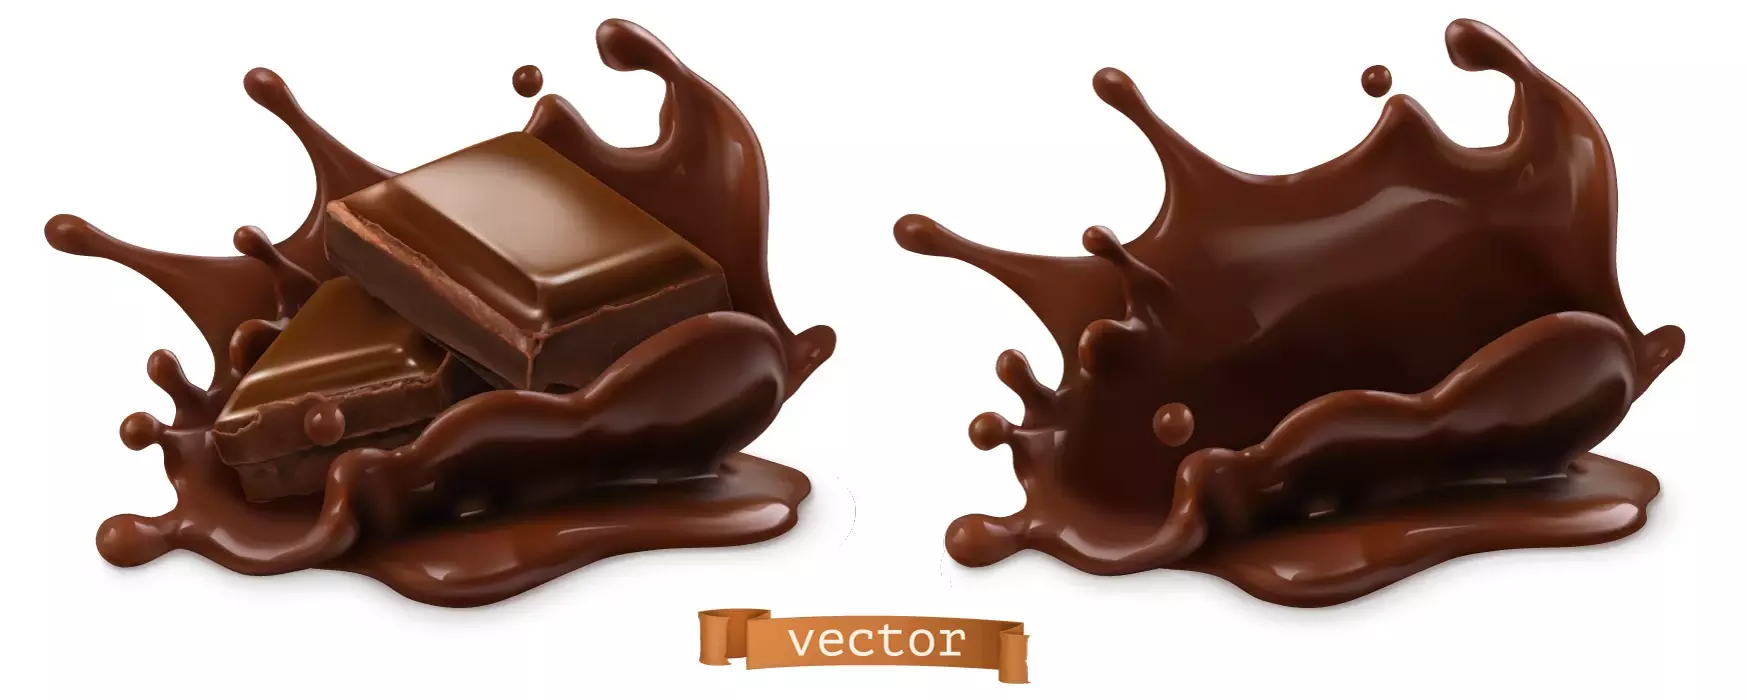 دانلود وکتور طراحی سه بعدی شکلات